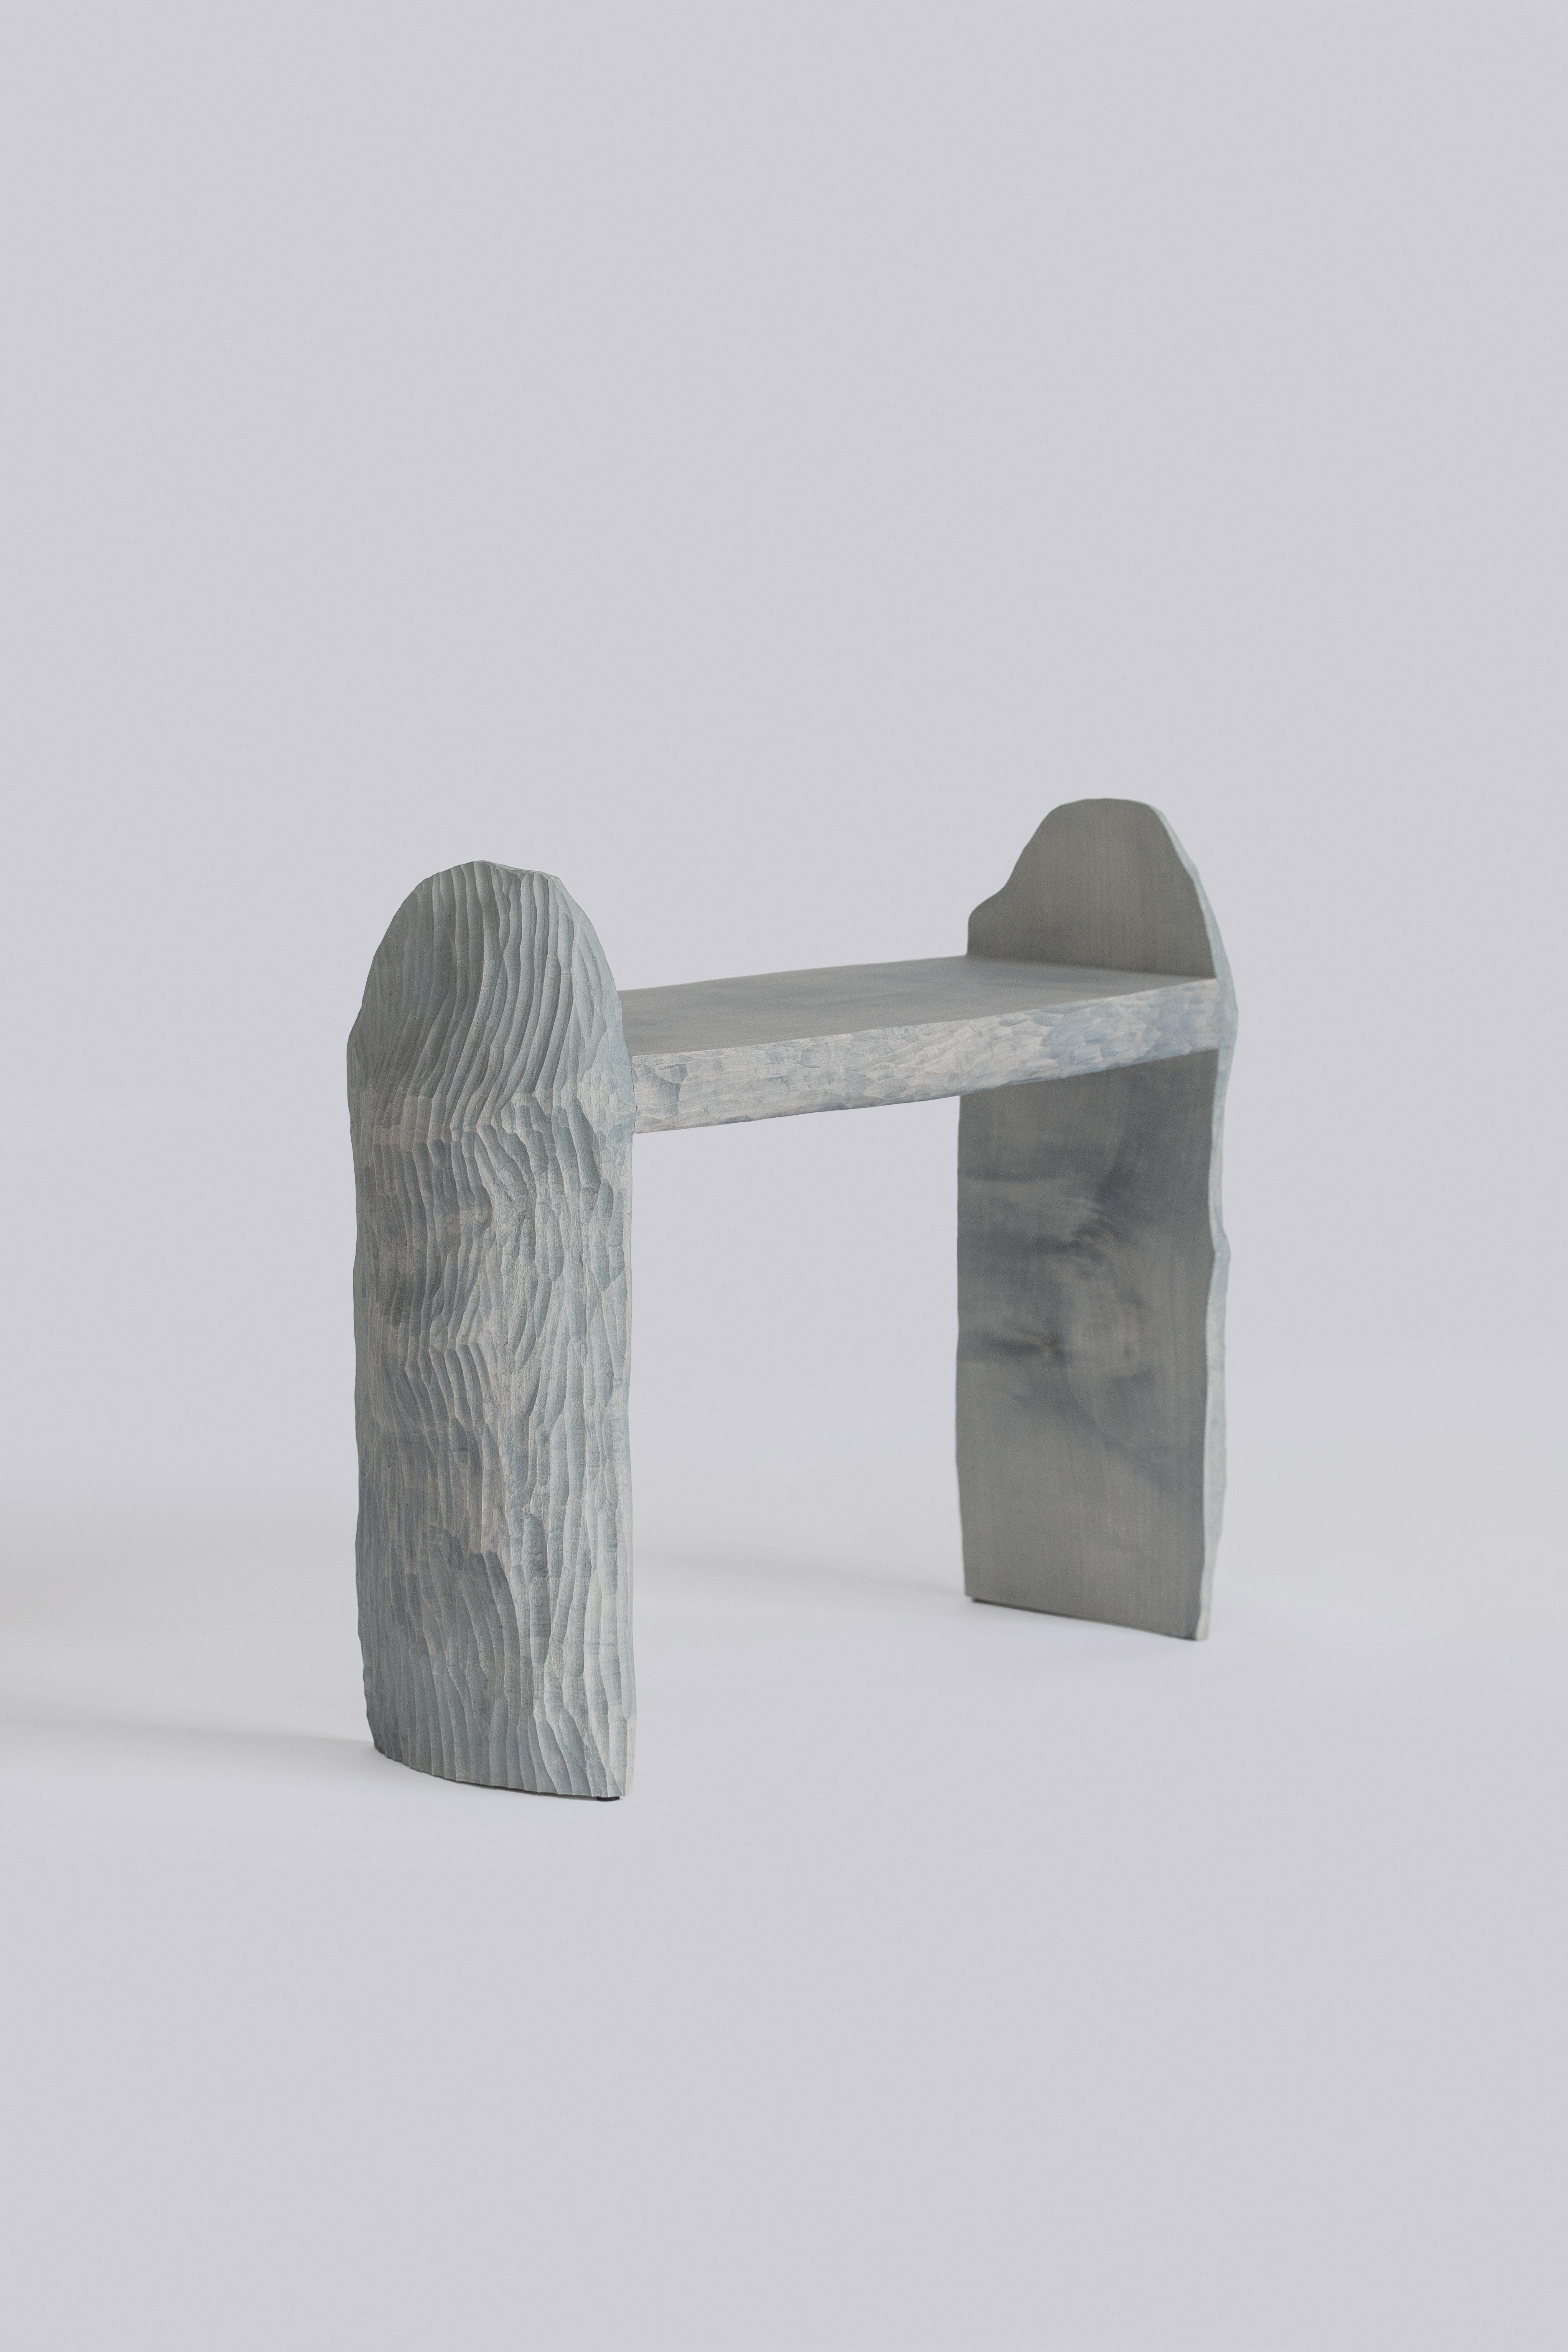 Intuitive Archaisme est une collection de meubles dont le processus de conception et de fabrication est basé sur l'instinct primitif d'assemblage de formes pour créer une structure. Le bois est travaillé à l'aide d'une gouge, révélant sa structure